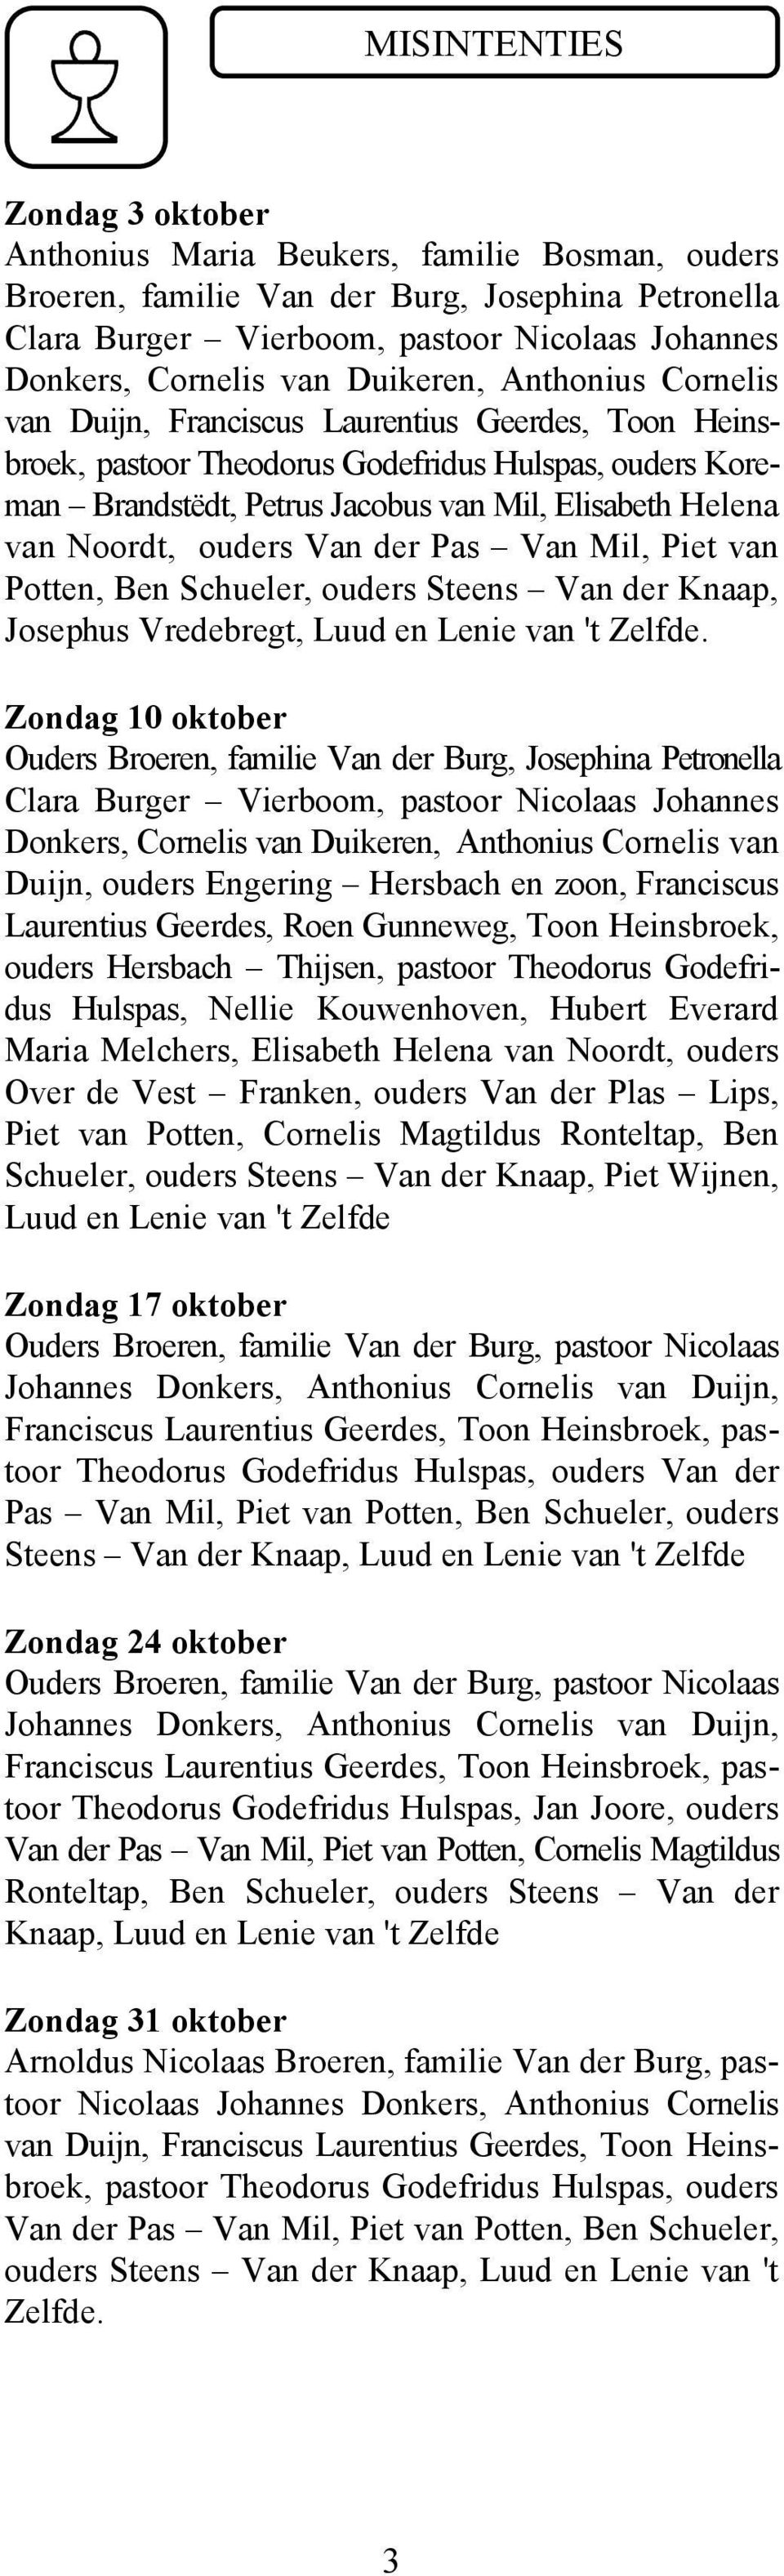 van Noordt, ouders Van der Pas Van Mil, Piet van Potten, Ben Schueler, ouders Steens Van der Knaap, Josephus Vredebregt, Luud en Lenie van 't Zelfde.